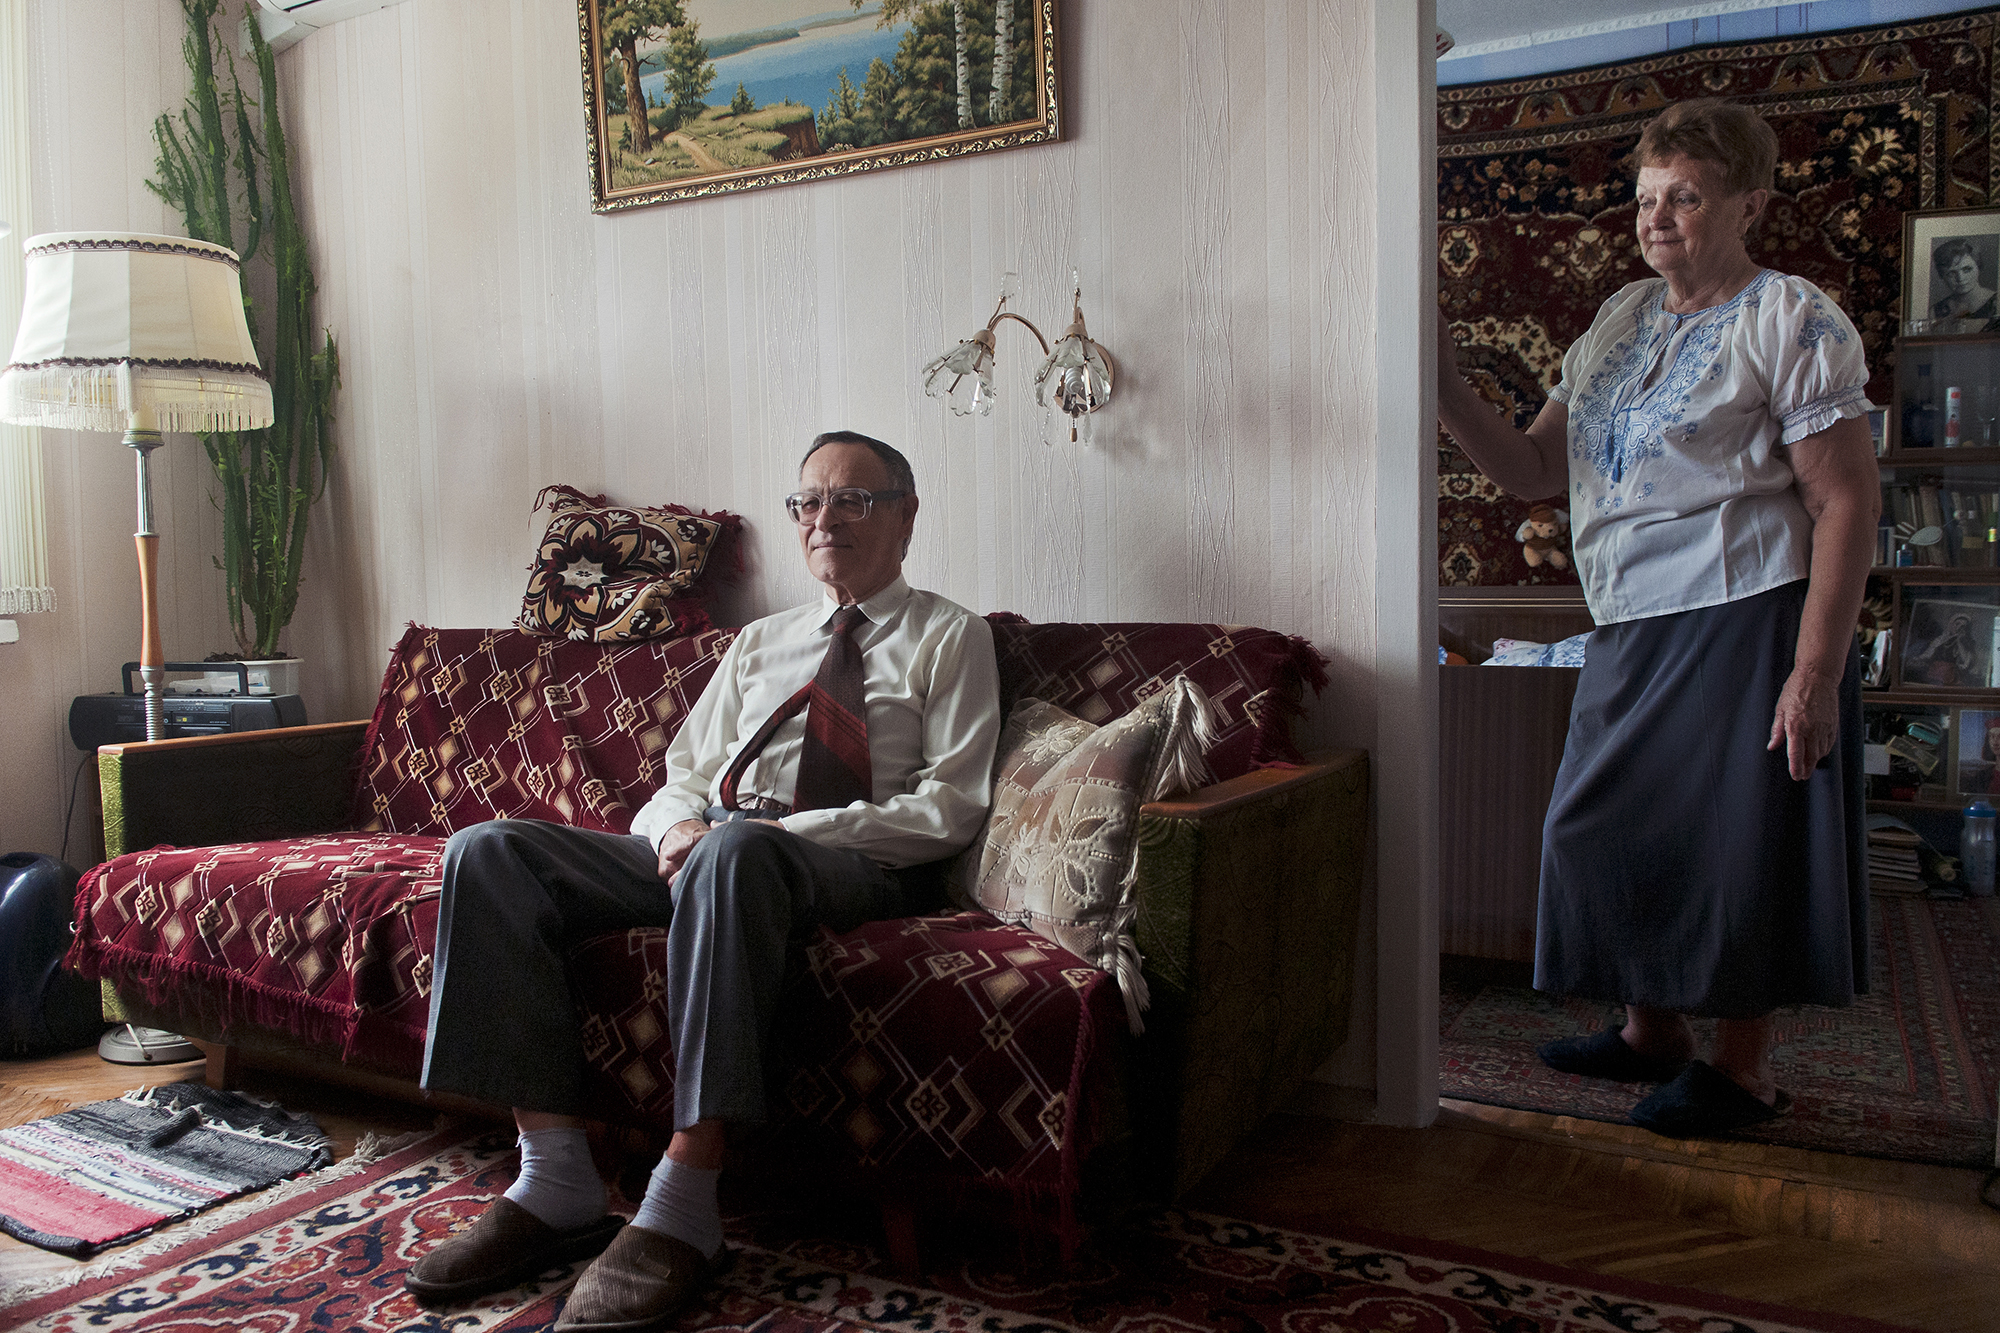 Oksanas Eltern, fotografiert 2014 in Charkiw. Kurz nach der Krim-Annexion und acht Jahre vor der russischen Invasion. © Oksana Yushko